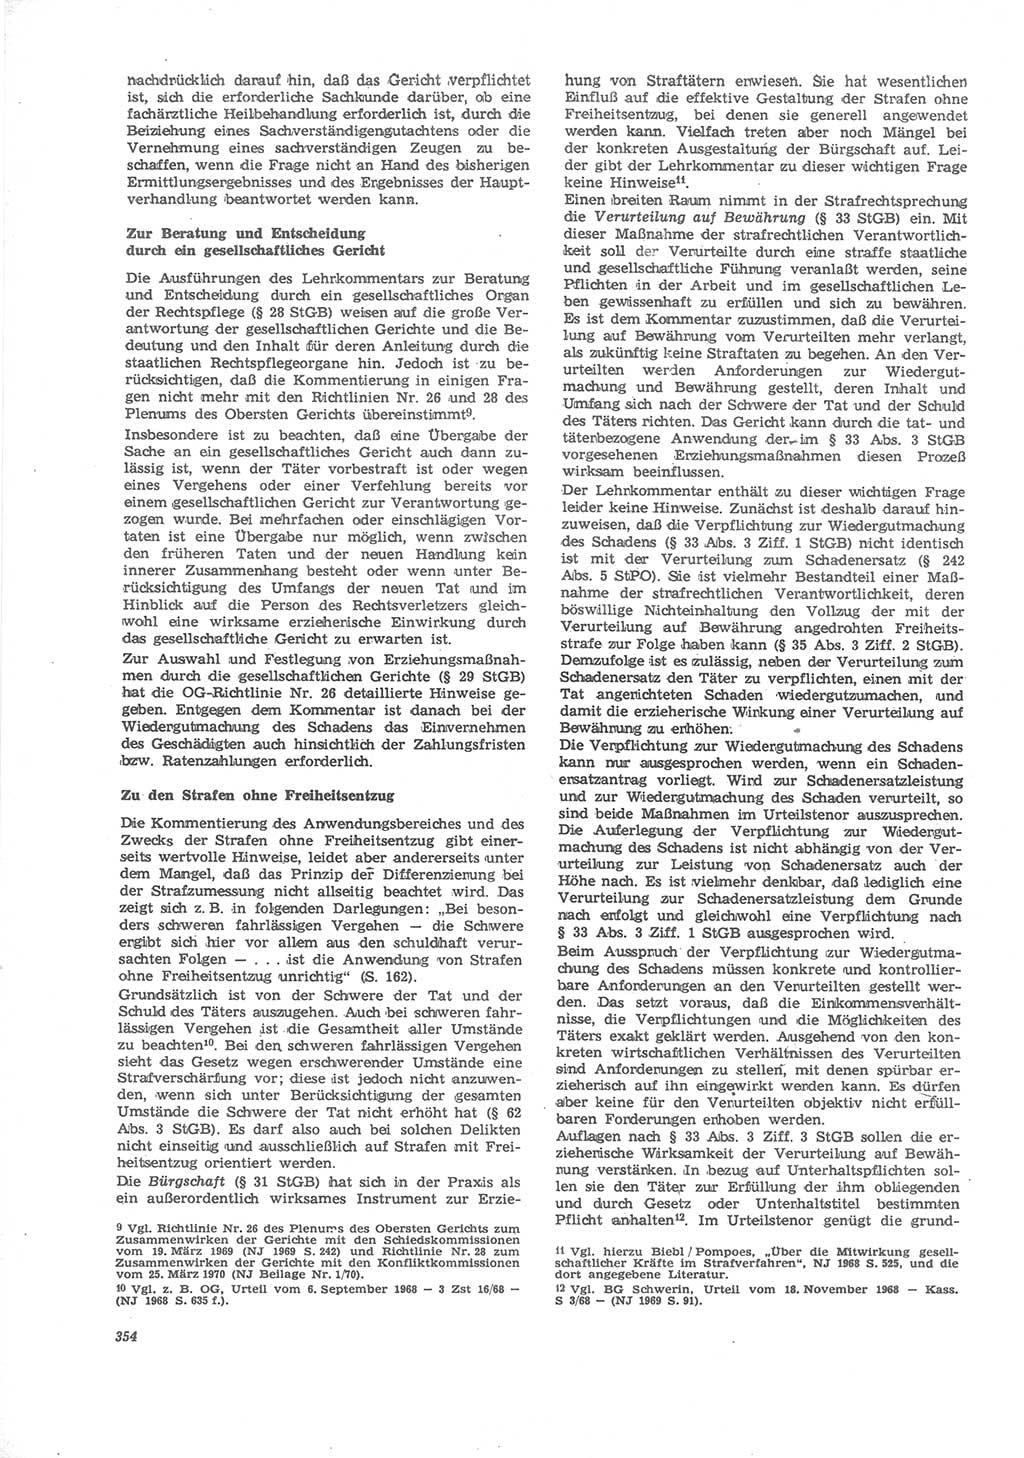 Neue Justiz (NJ), Zeitschrift für Recht und Rechtswissenschaft [Deutsche Demokratische Republik (DDR)], 24. Jahrgang 1970, Seite 354 (NJ DDR 1970, S. 354)